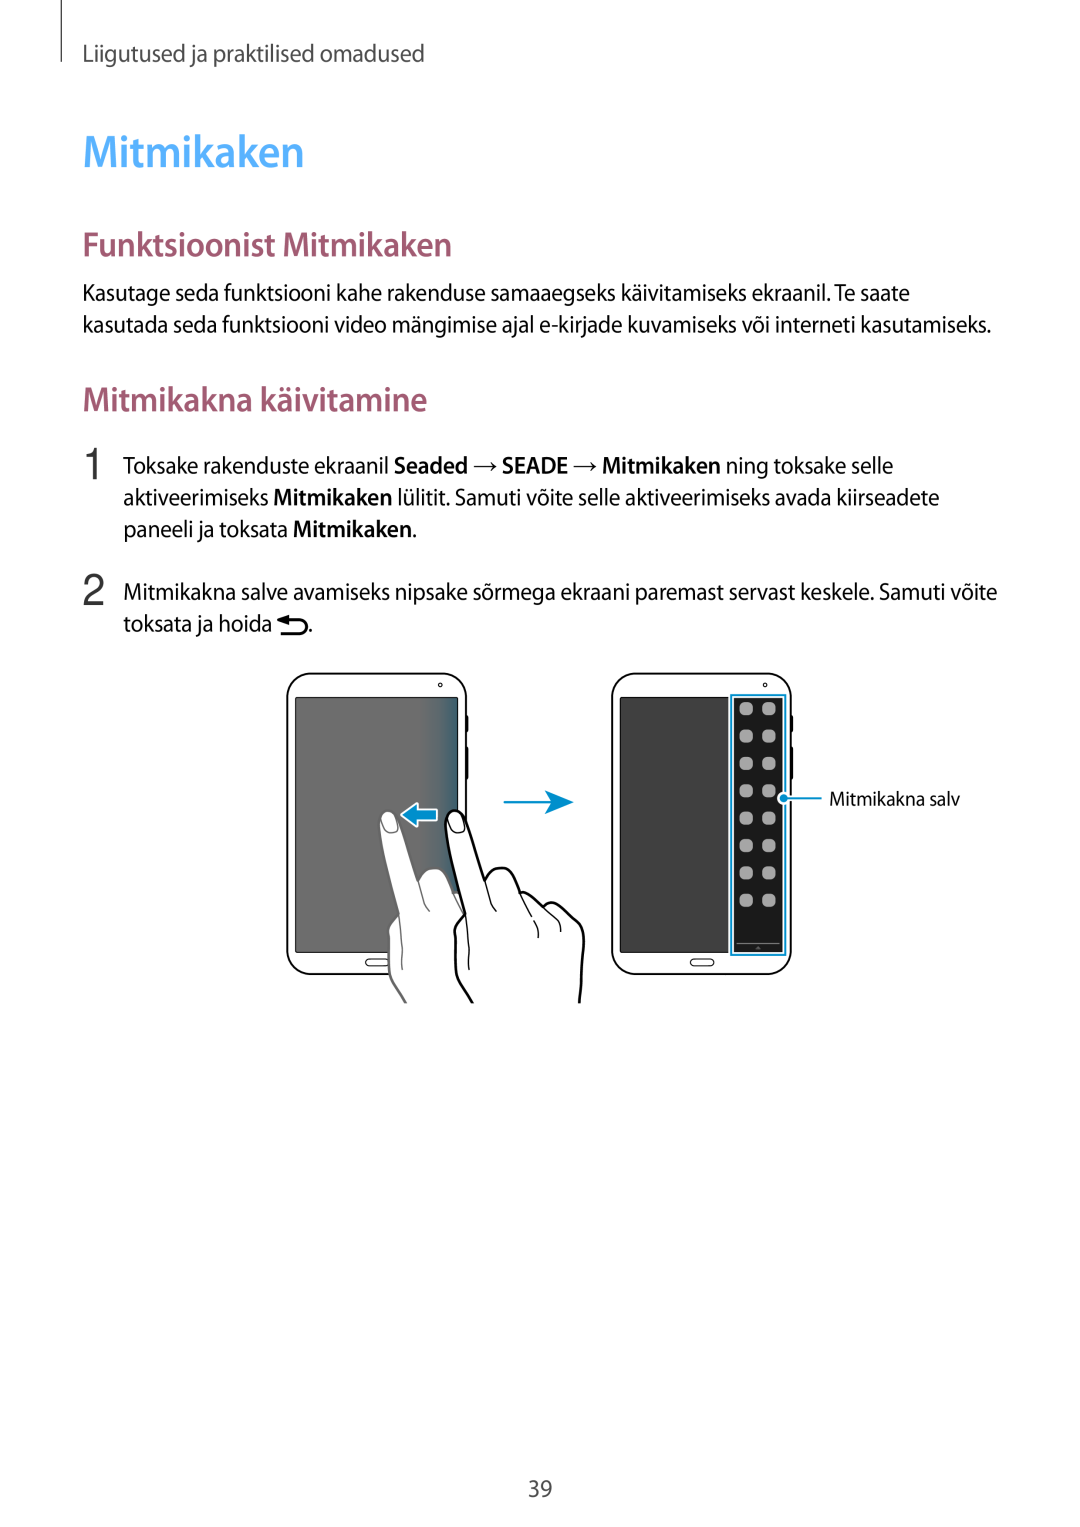 Samsung SM-T700NTSASEB manual Funktsioonist Mitmikaken, Mitmikakna käivitamine, Liigutused ja praktilised omadused 